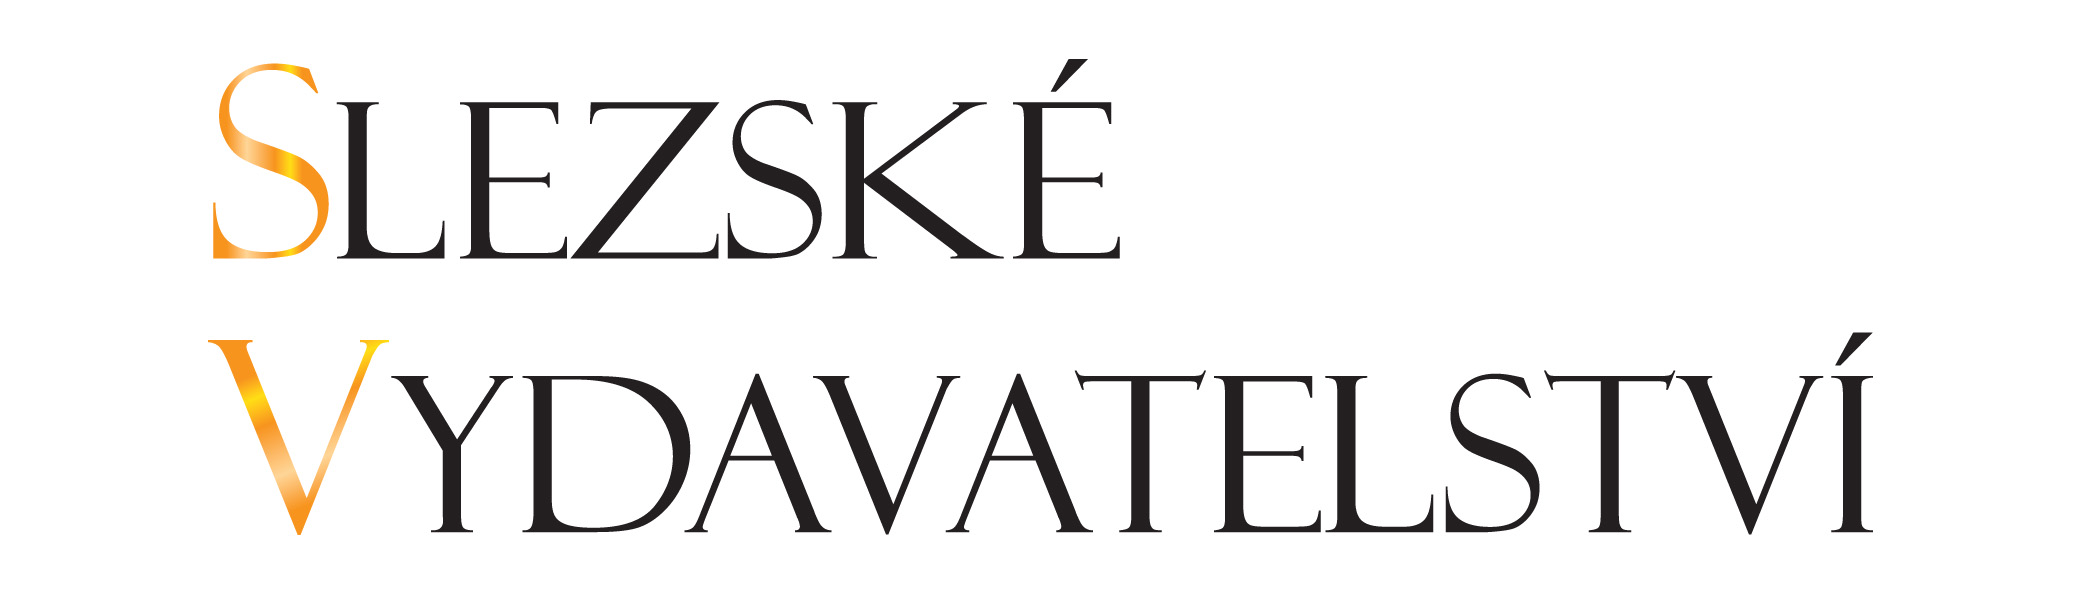 Slezske-vydavatelstvi-logo-ii